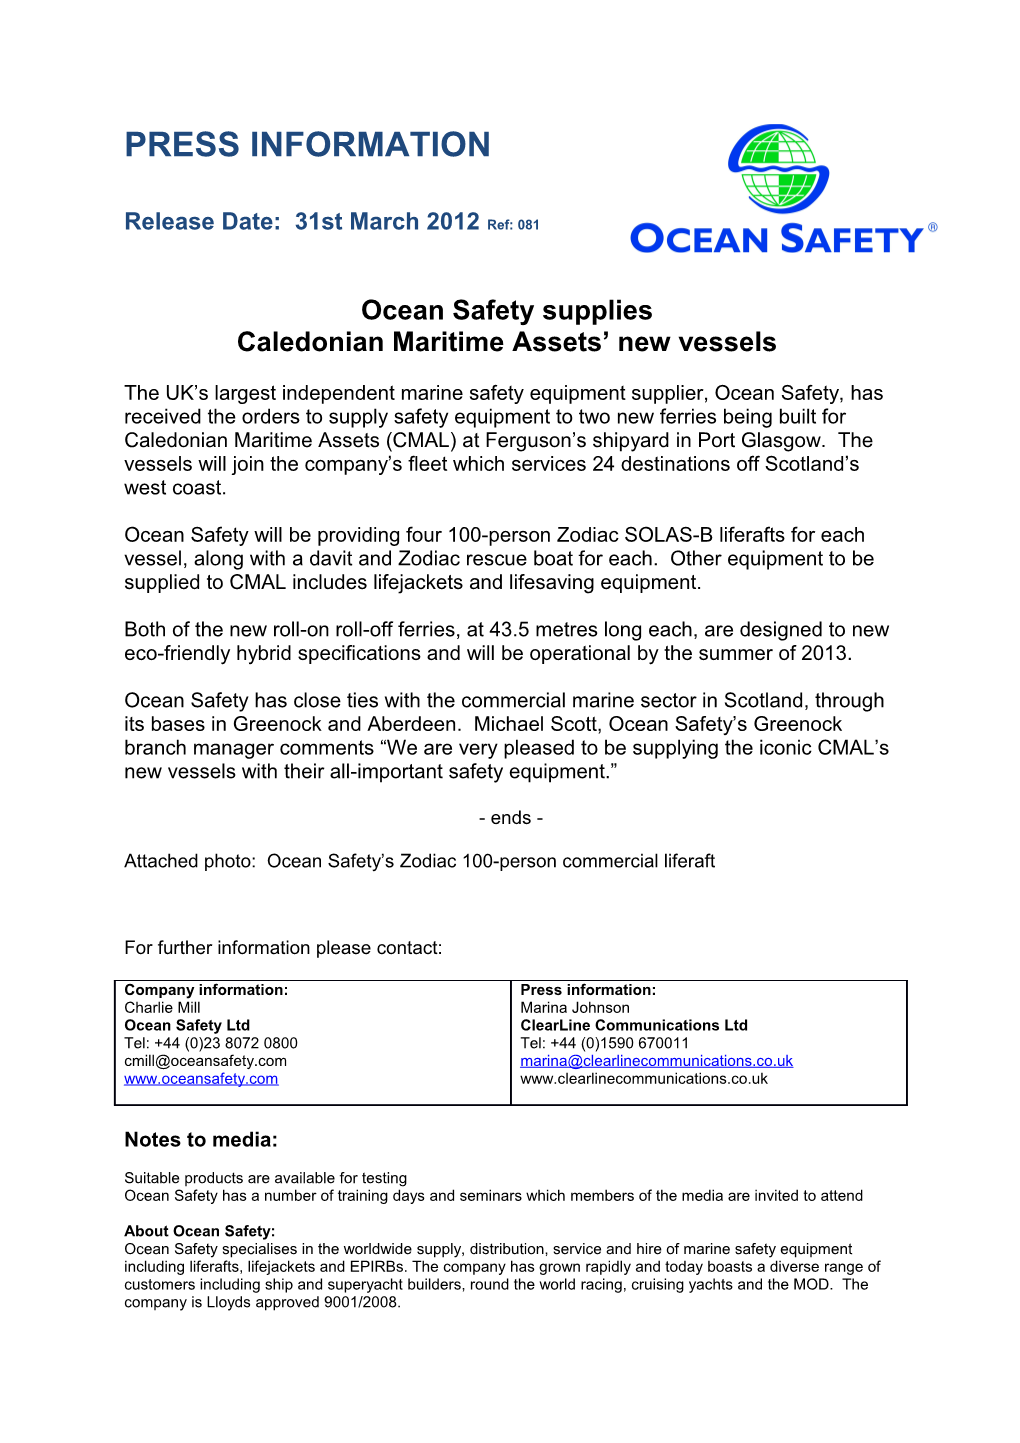 Ocean Safety Supplies